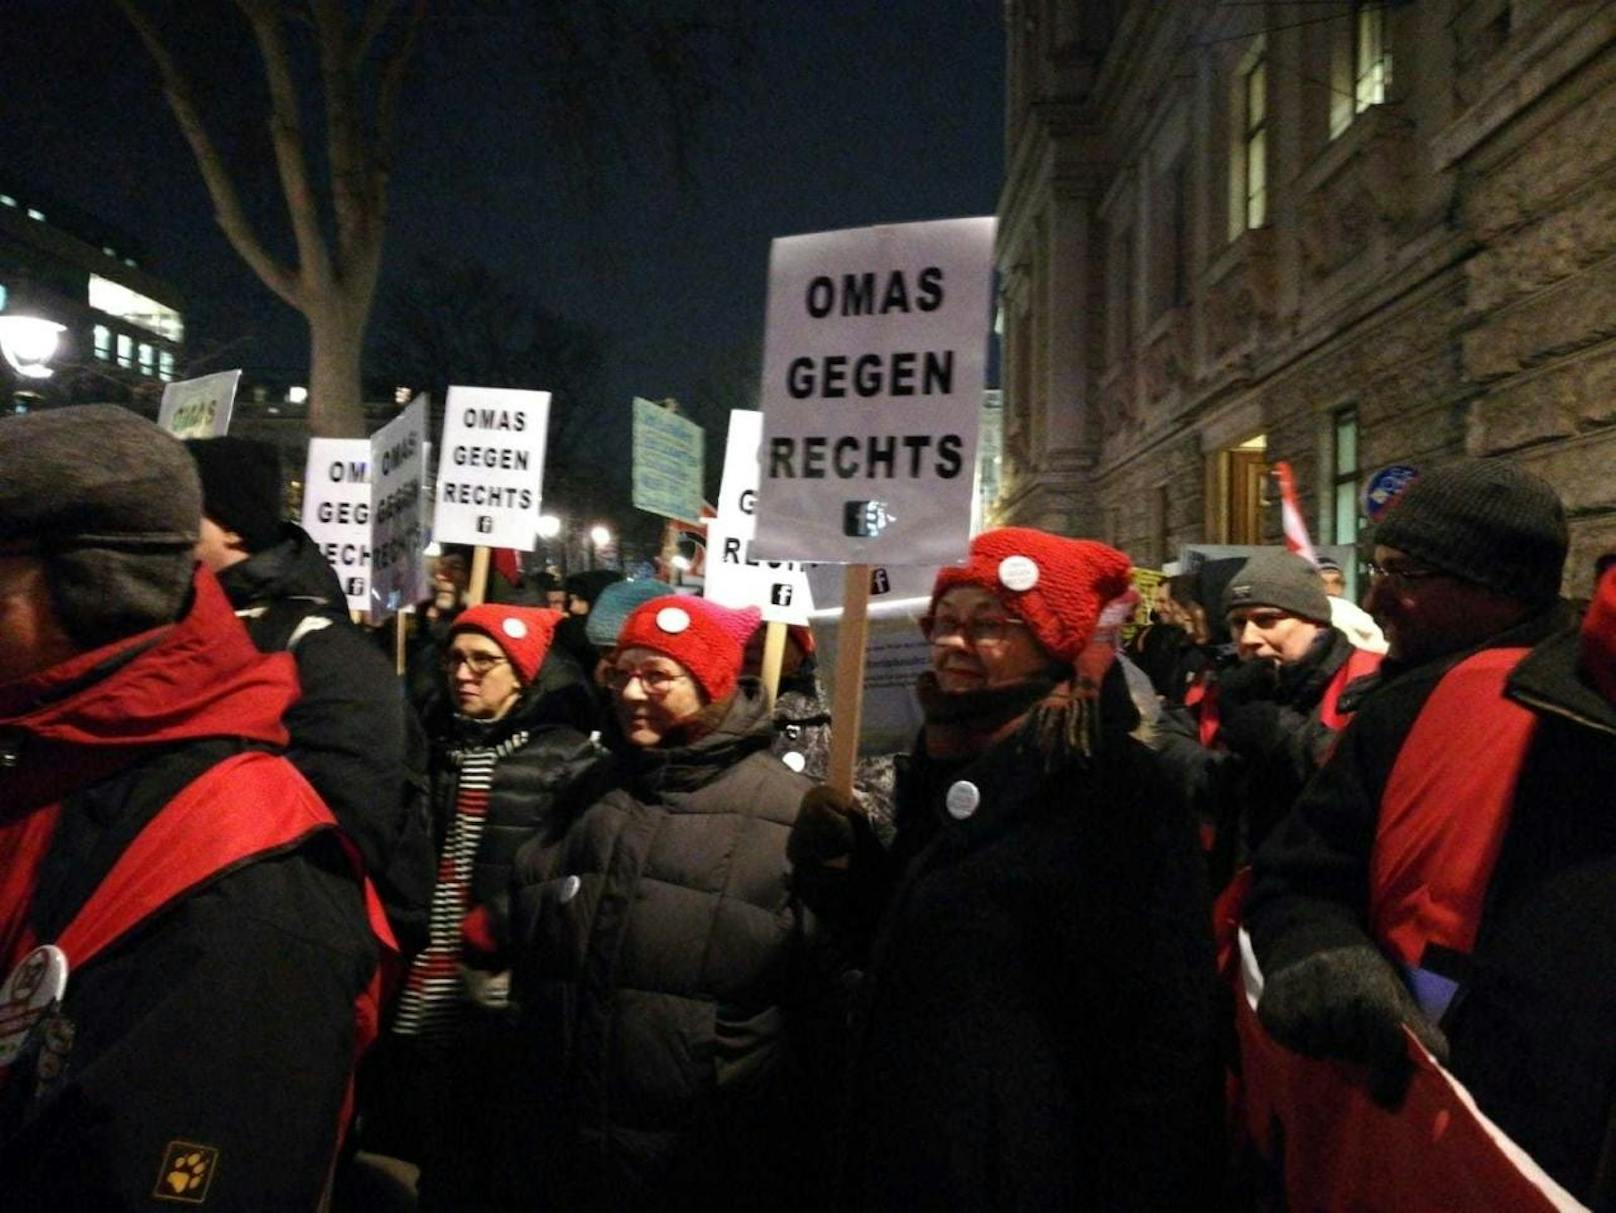 Die "Omas gegen Rechts" traten ab 2017 gegen die türkis-blaue Bundesregierung auf, oft im Rahmen der wöchentlichen Donnerstags-Demos.